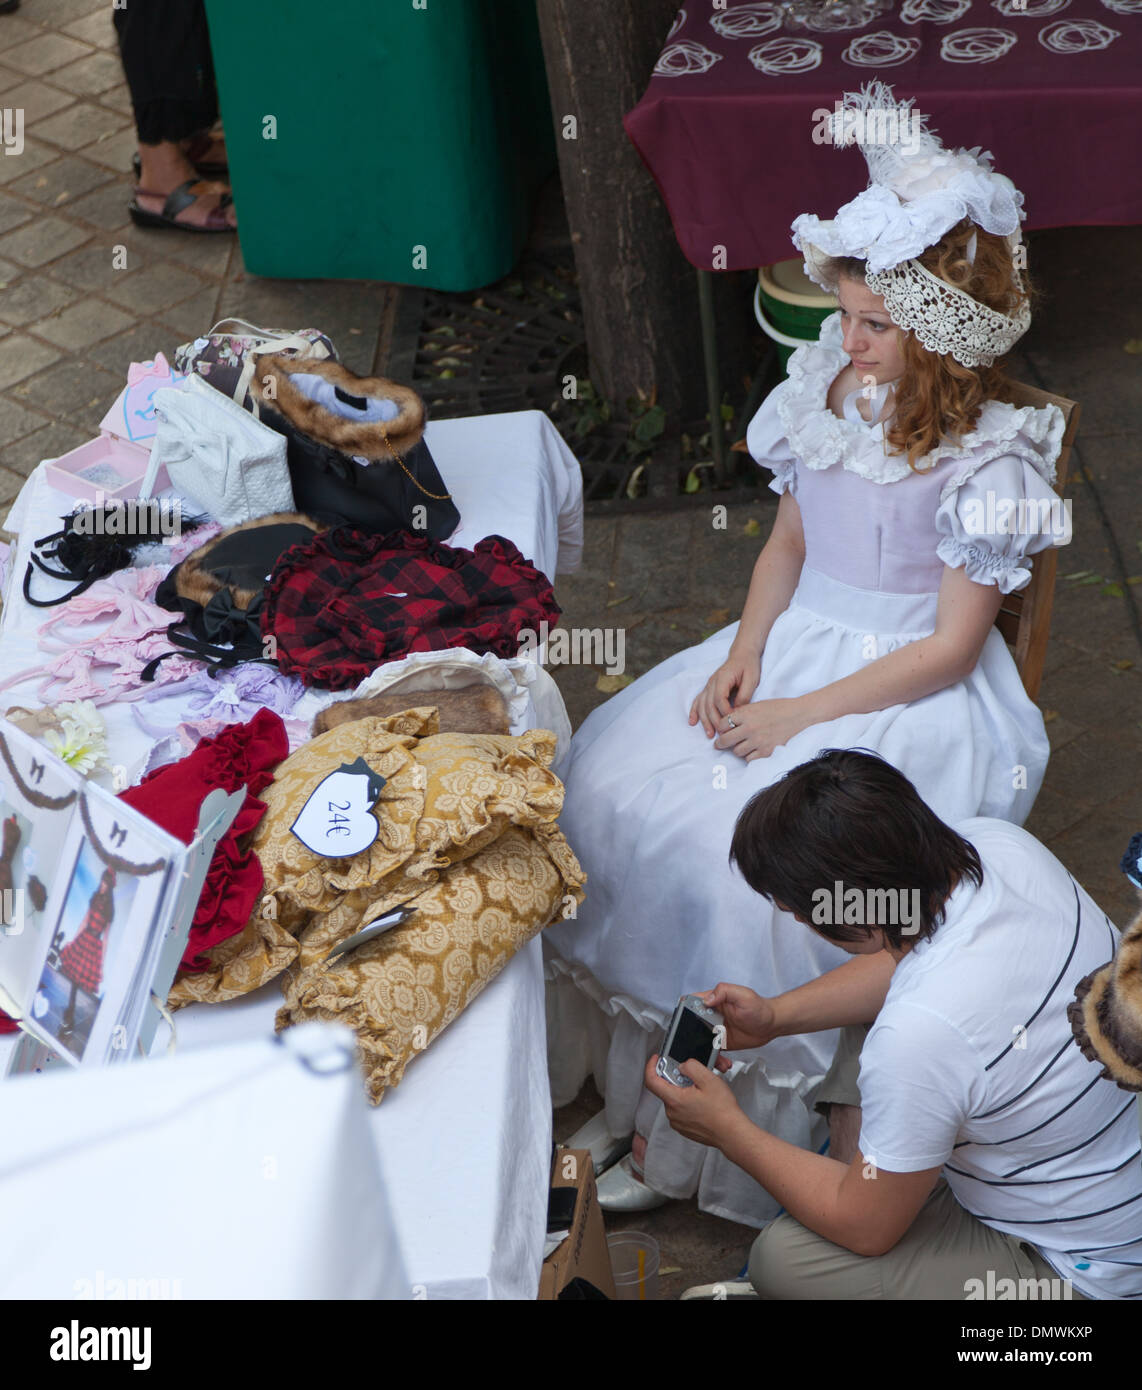 Amboise serata estiva sul mercato, due donne in attesa per i clienti a vestiti uno stallo indossando il tradizionale costume francese Foto Stock